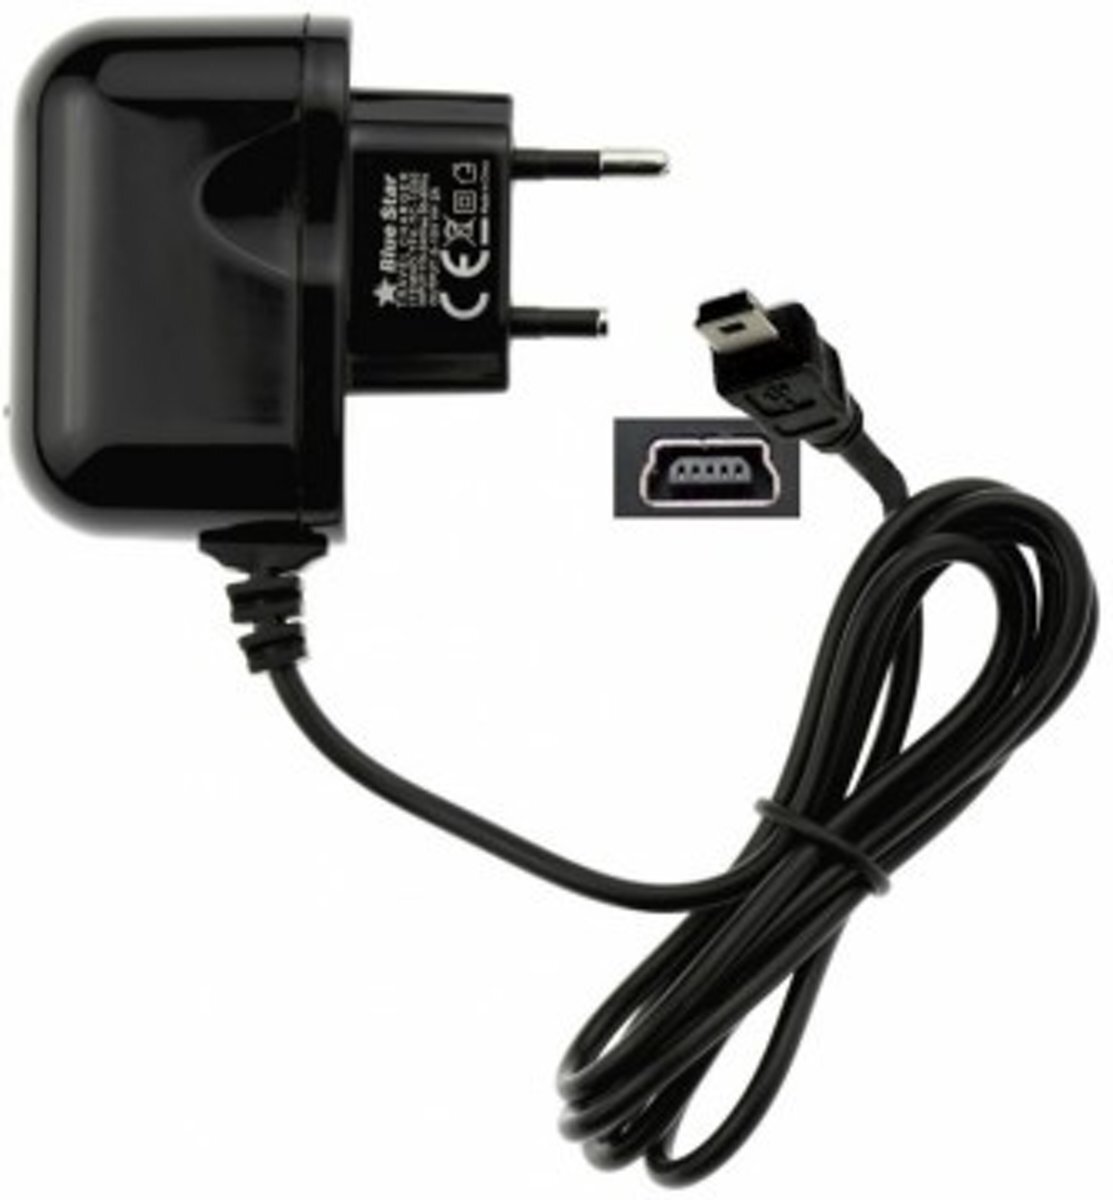 ABC-LED Oplader 220V voor TomTom GO 610 - 2 ampere lader